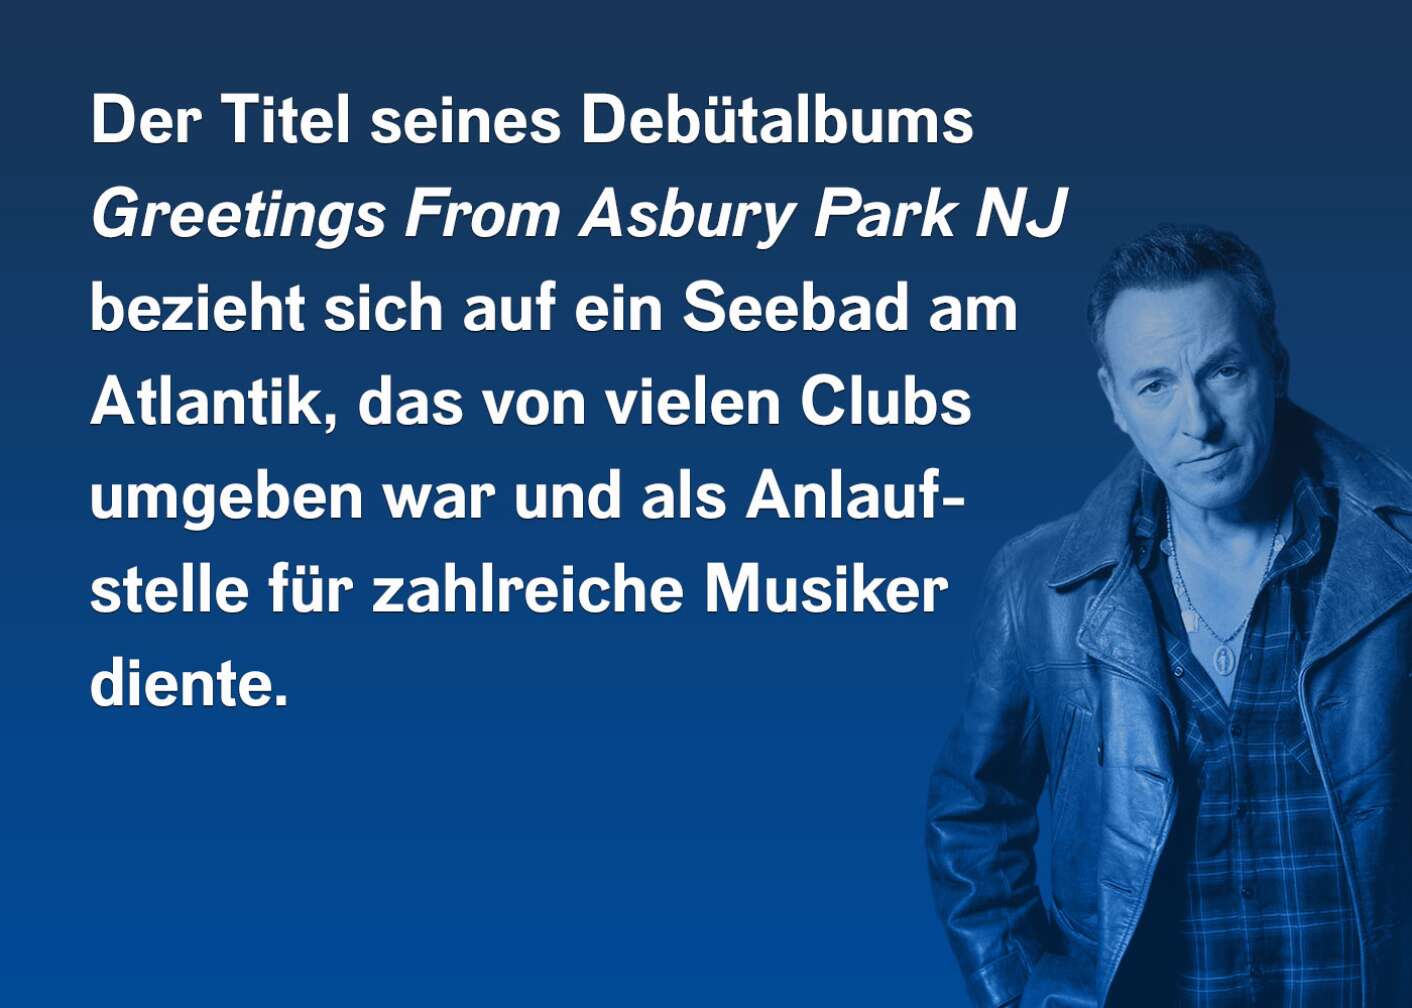 Der Titel seines Debütalbums "Greetings From Asbury Park NJ" bezieht sich auf ein Seebad am Atlantik, das von vielen Clubs umgeben war und als Anlaufstelle für zahlreiche Musiker diente.